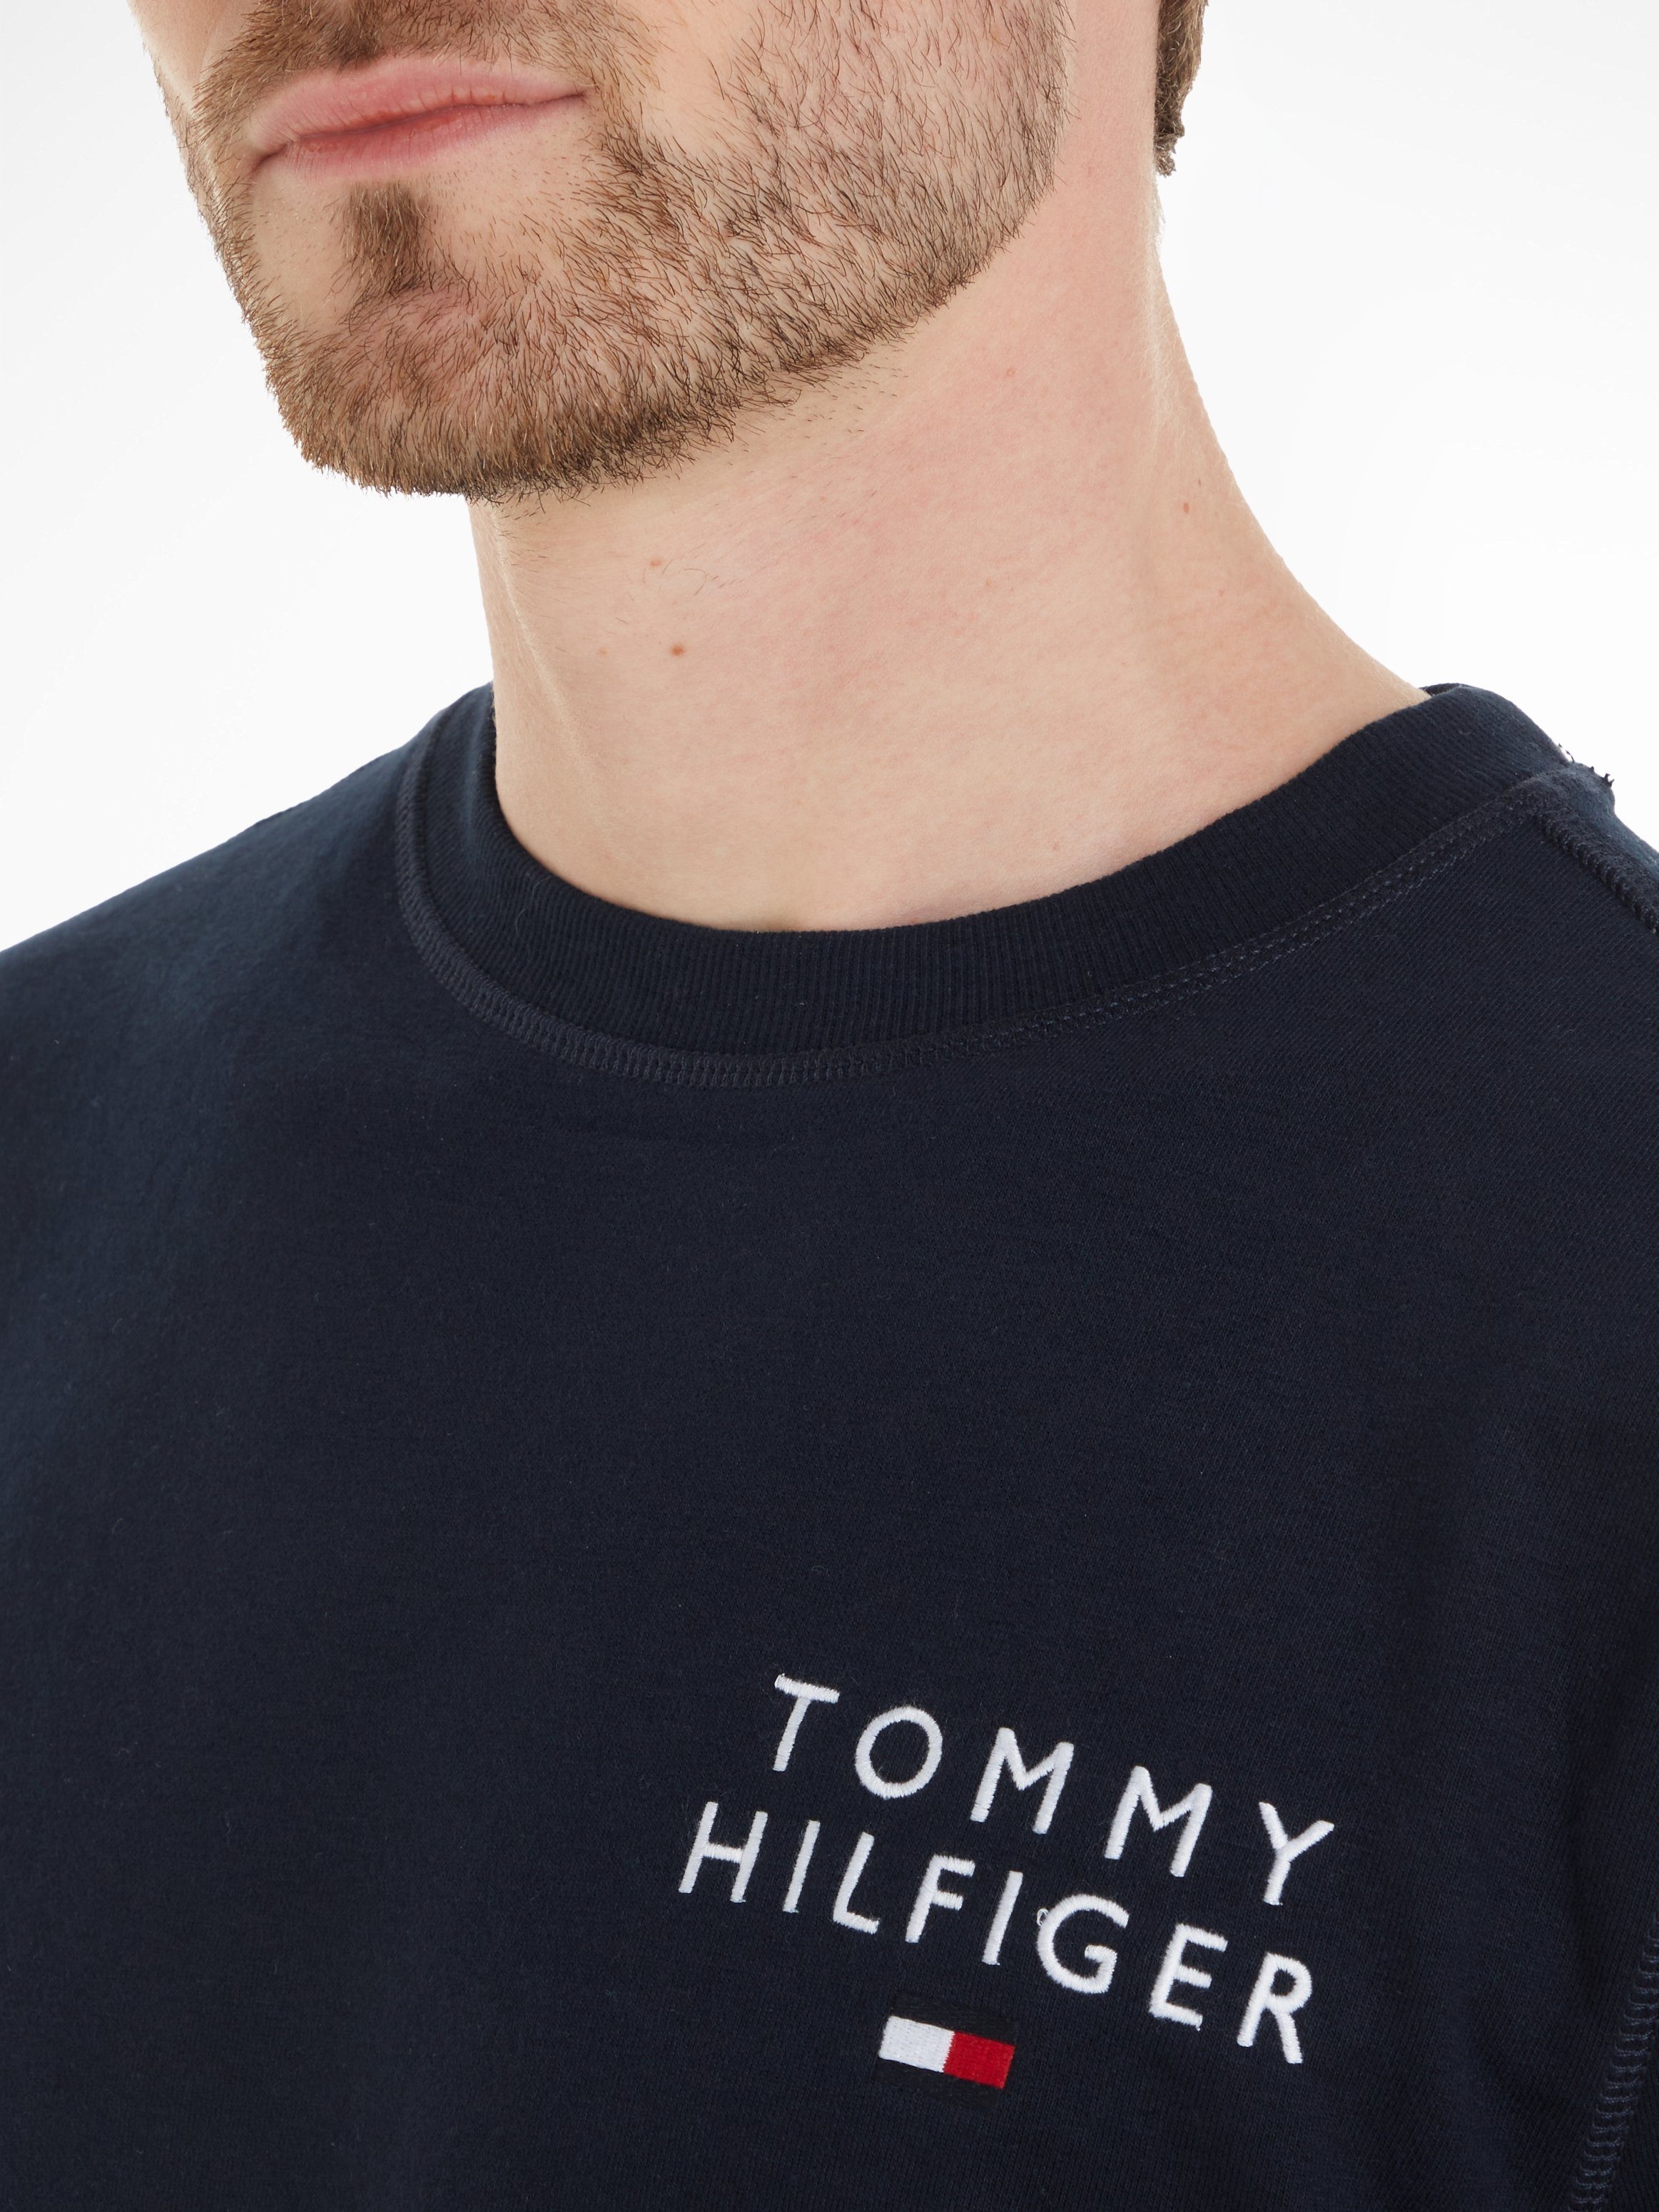 Tommy Hilfiger Markenlabel Sweatshirt Tommy TOP Underwear Hilfiger HWK mit TRACK dunkelblau